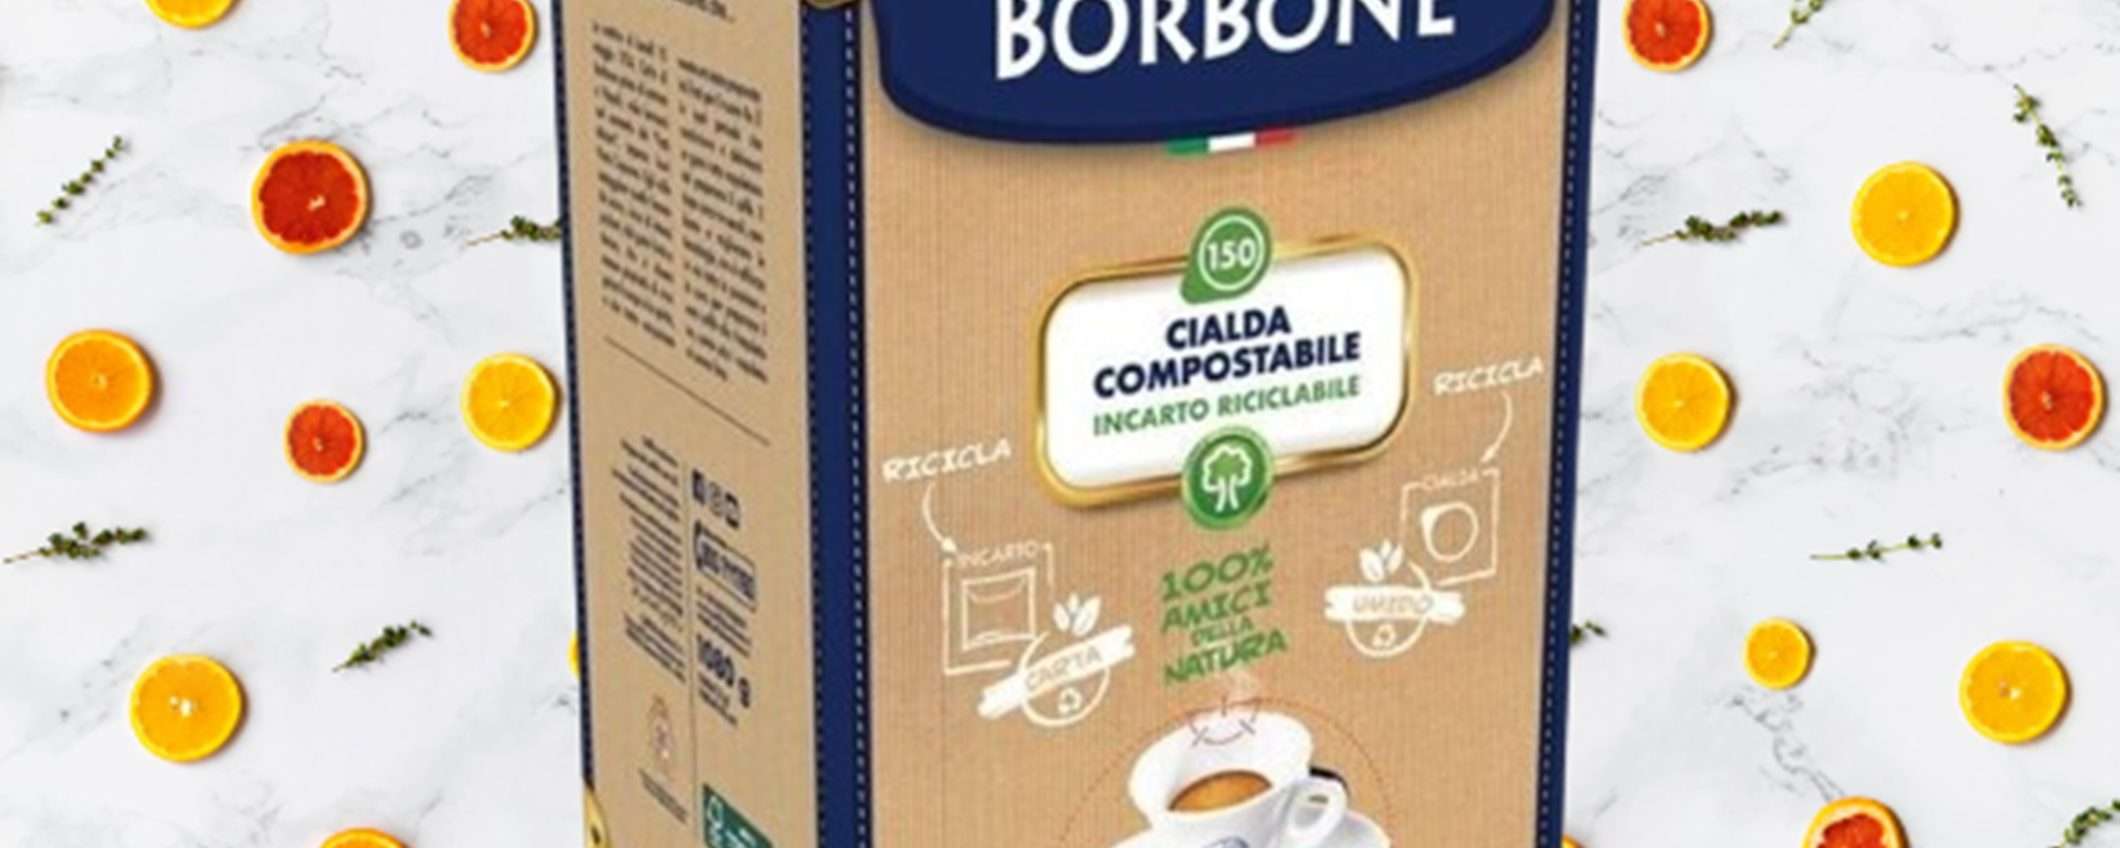 Caffè Borbone Miscela Nera: 150 cialde compostabili scontate del 24%